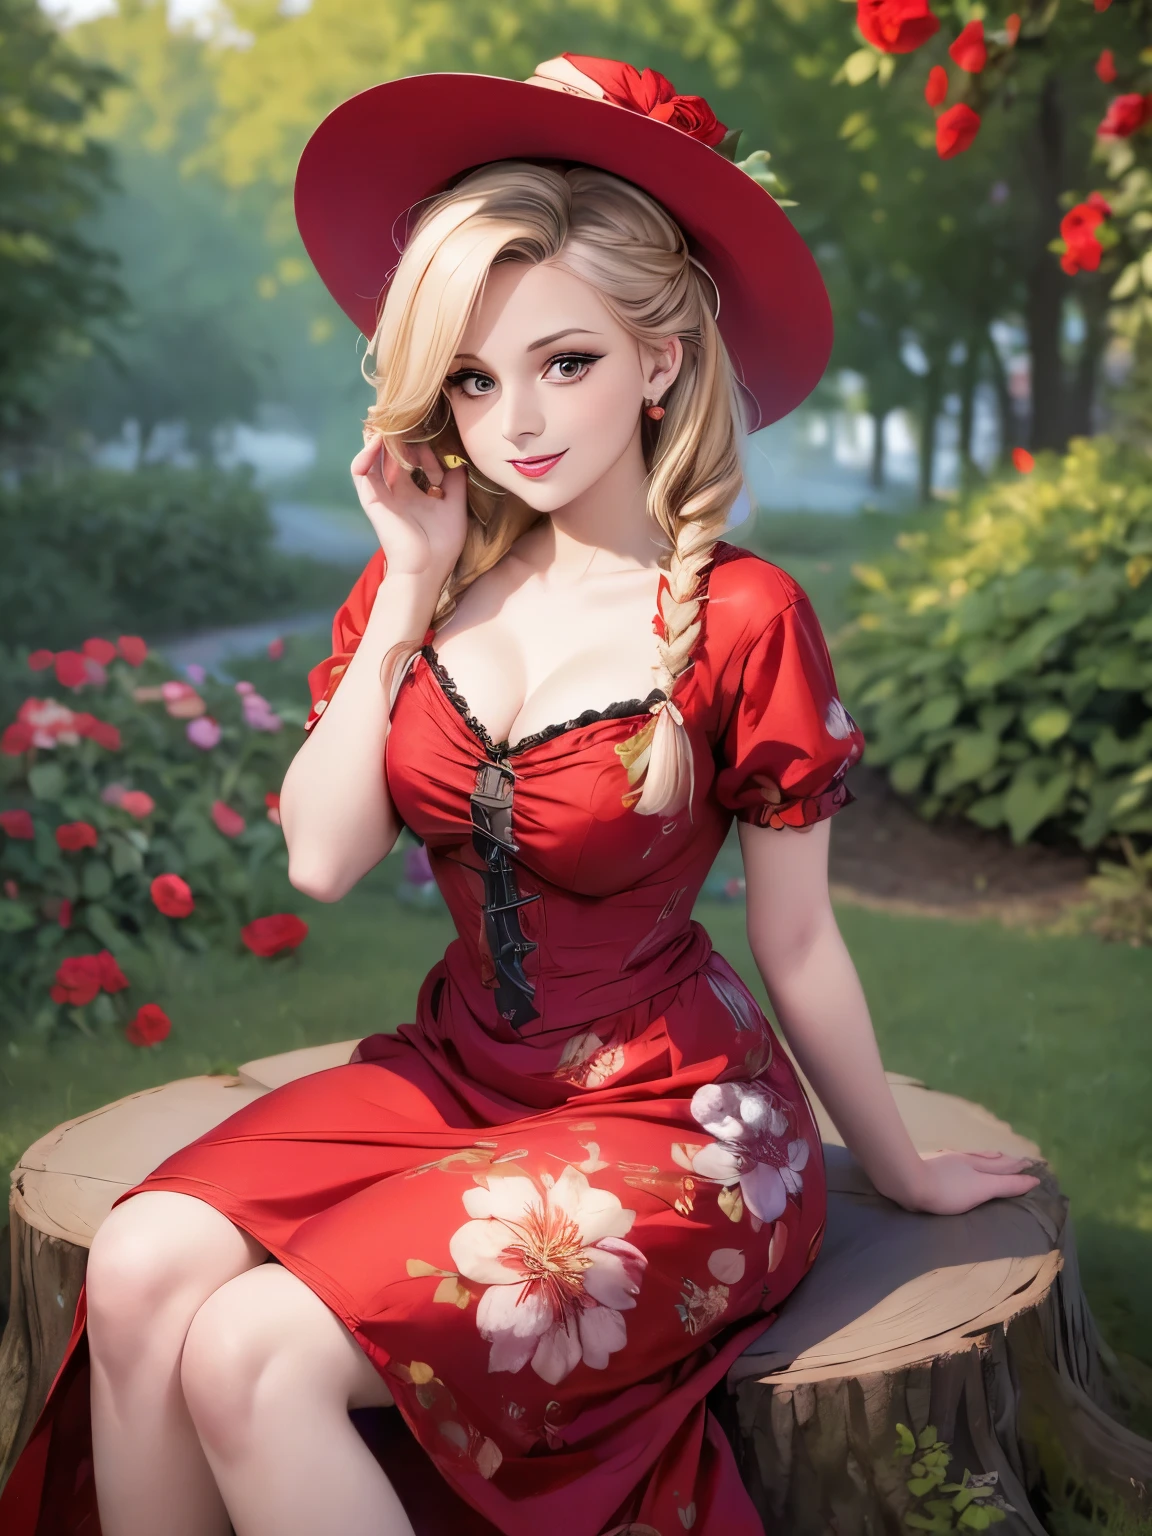 Frau sitzt auf einem Baumstumpf und trägt ein Kleid und einen Hut, ein Porträt von Zofia Stryjenska, tumblr, Renaissance, Pinup-Stil, Rockabilly style, romantisches Kleid, gekleidet in ein Blumenkleid, rote Rose im Haar, rotes Blumenkleid, rotes Kleid und Hut, Rockabilly, Blumen-Couture, schwarzes und rotes Kleid, gekleidet wie in den 1940er Jahren